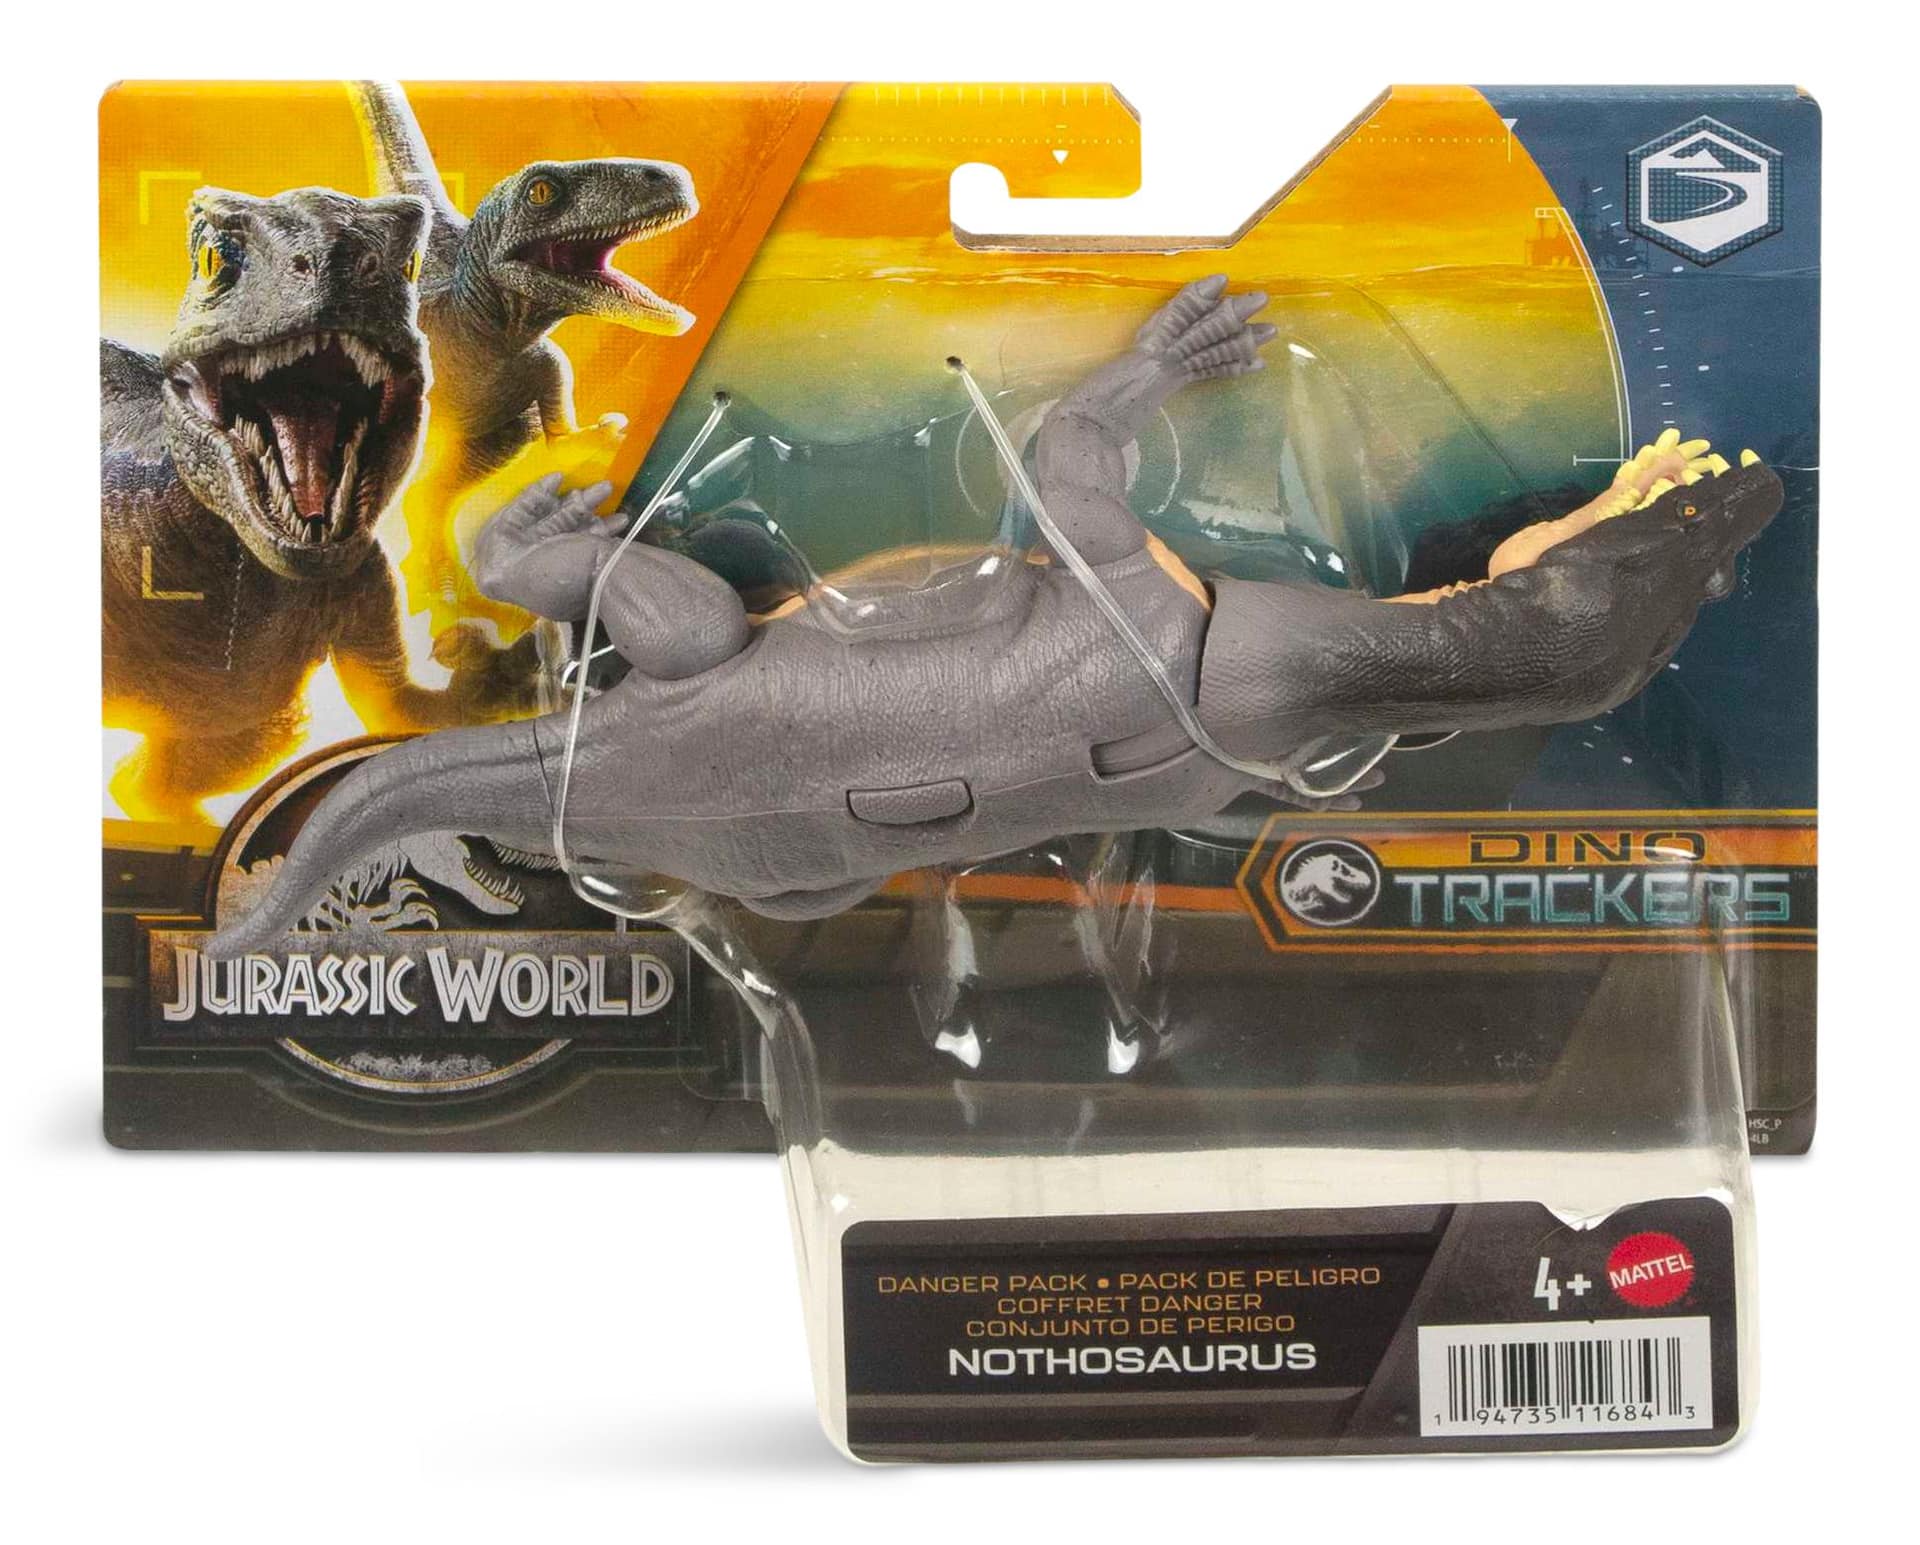 Jurassic World Danger Pack Dinosaur Action Figure, Assorted